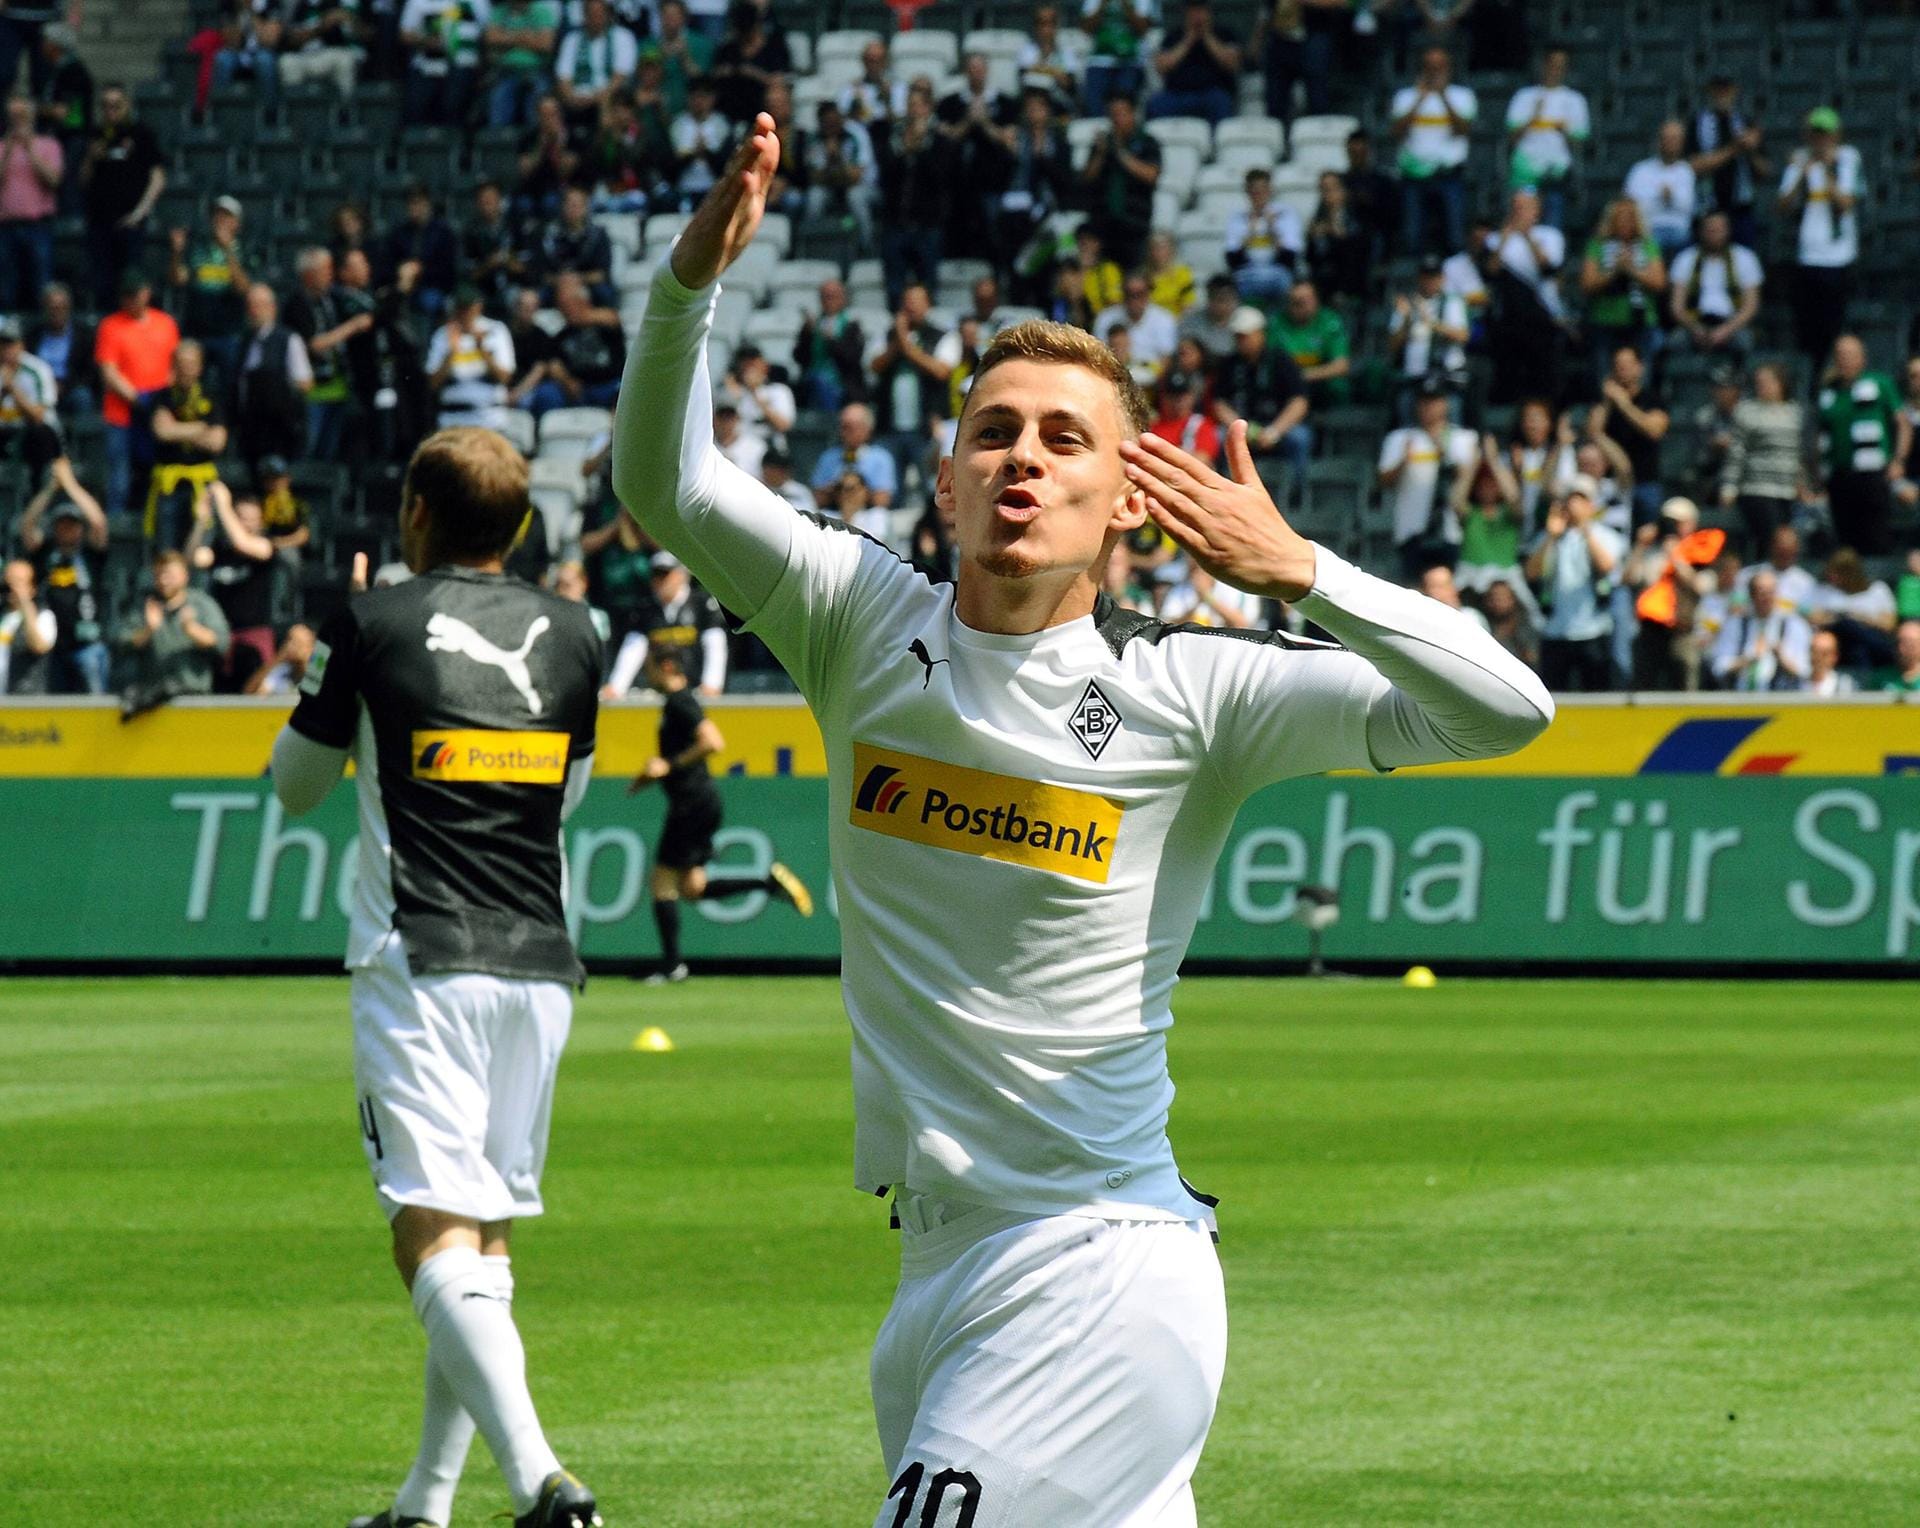 Auch im Fall von Thorgan Hazard bedient sich Dortmund bei einem Bundesligakonkurrenten. Der Mittelfeldspieler kommt von Borussia Mönchengladbach. Ablösesumme: 25,5 Millionen Euro.